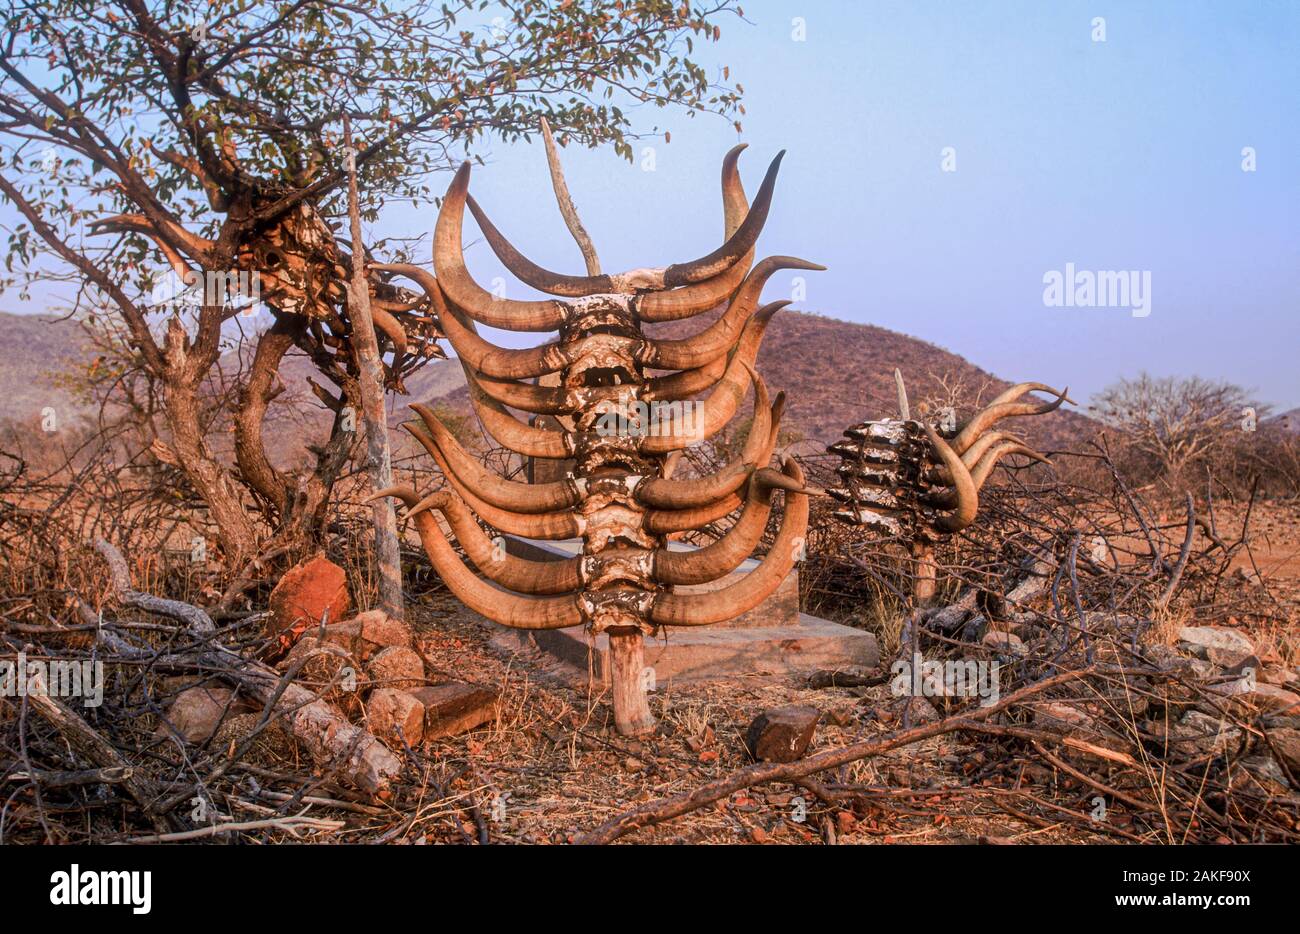 Tomba di un importante leader del clan con teschi bovini macellati sulla tomba di servirlo nella vita ultraterrena. Villaggio Himba, Kaokoveld, Namibia, Africa Foto Stock